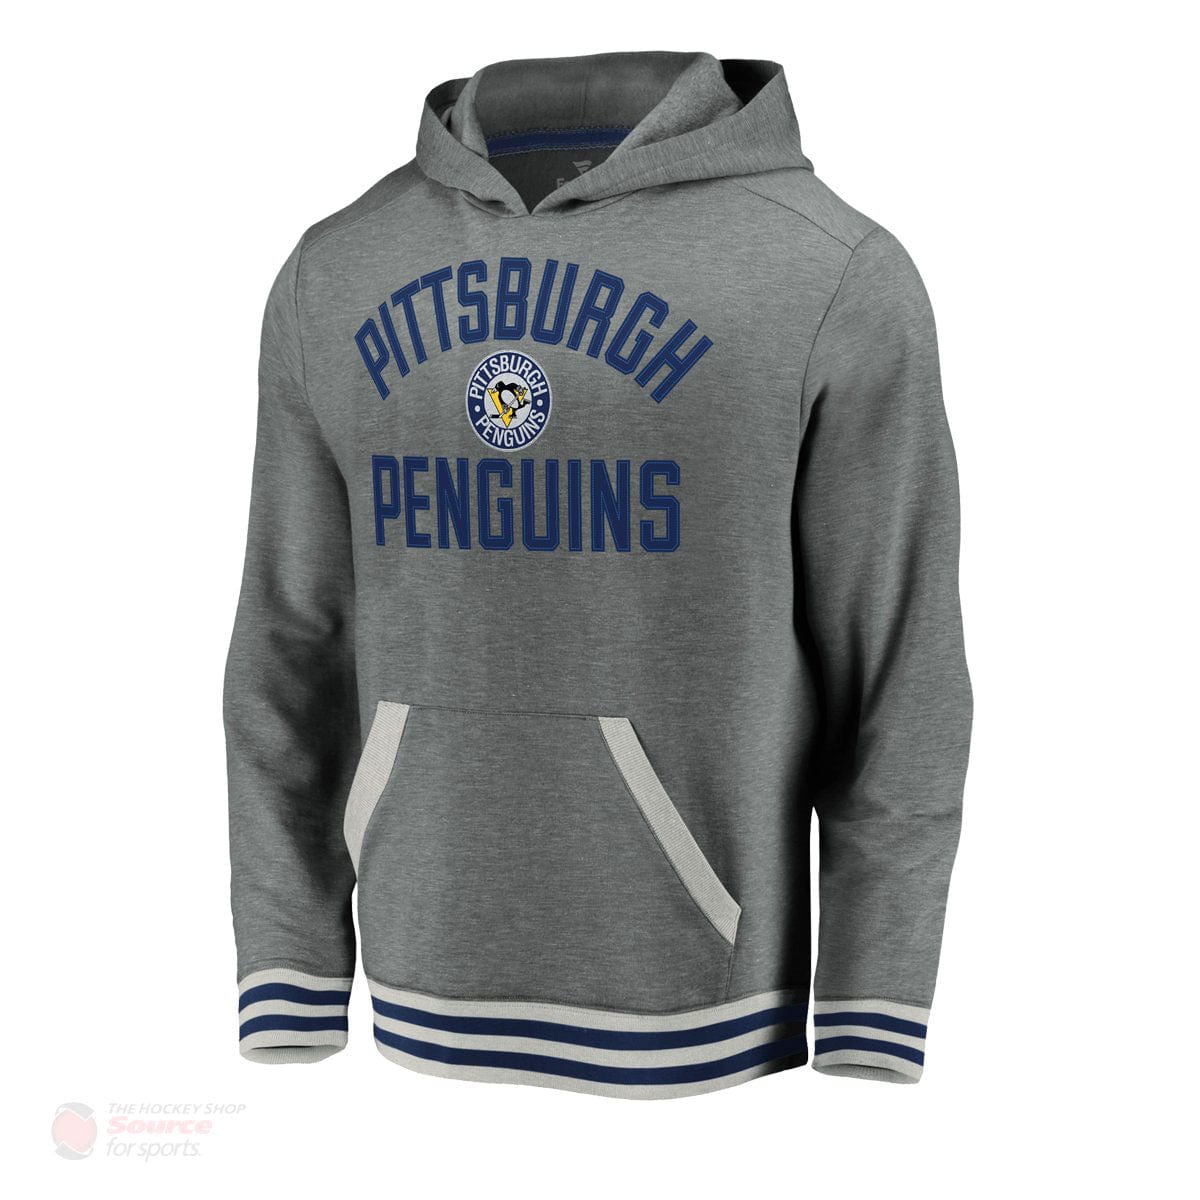 Pittsburgh Penguins Fanatics Upperclassmen Vintage Pullover Mens Hoody